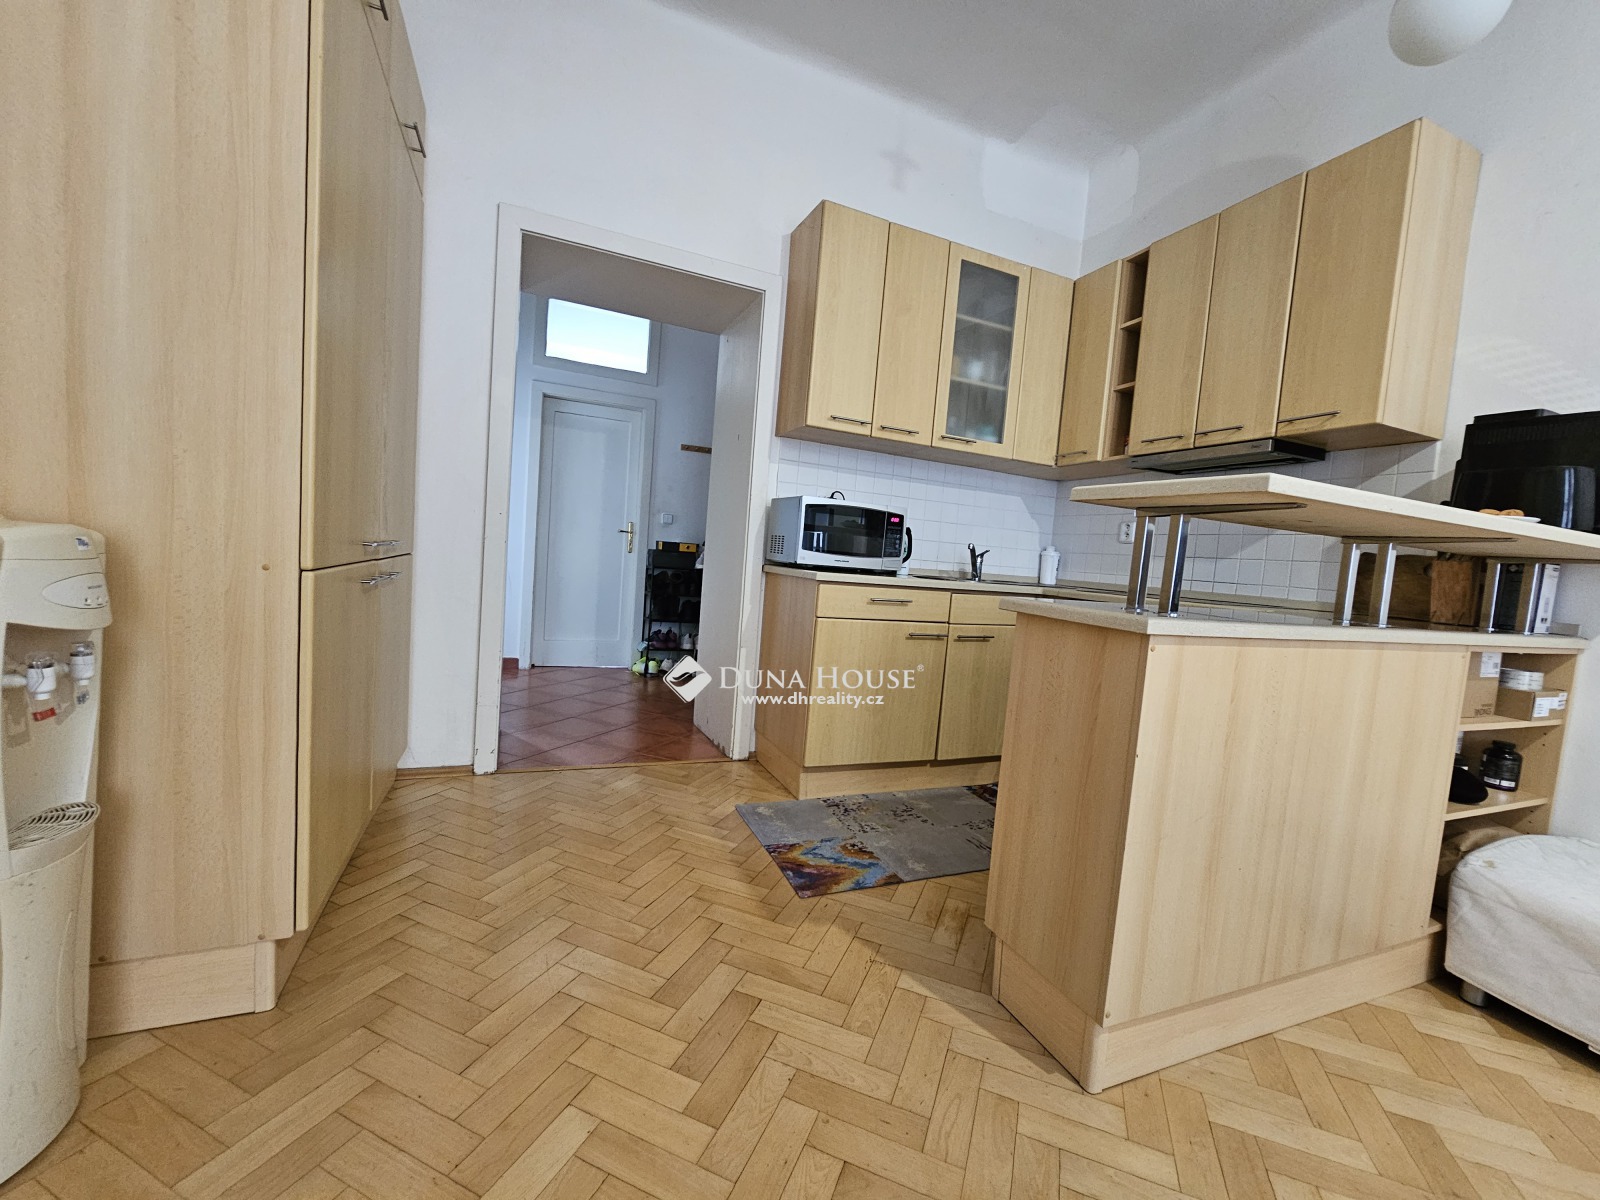 For sale flat, Řehořova, Praha 3 Žižkov